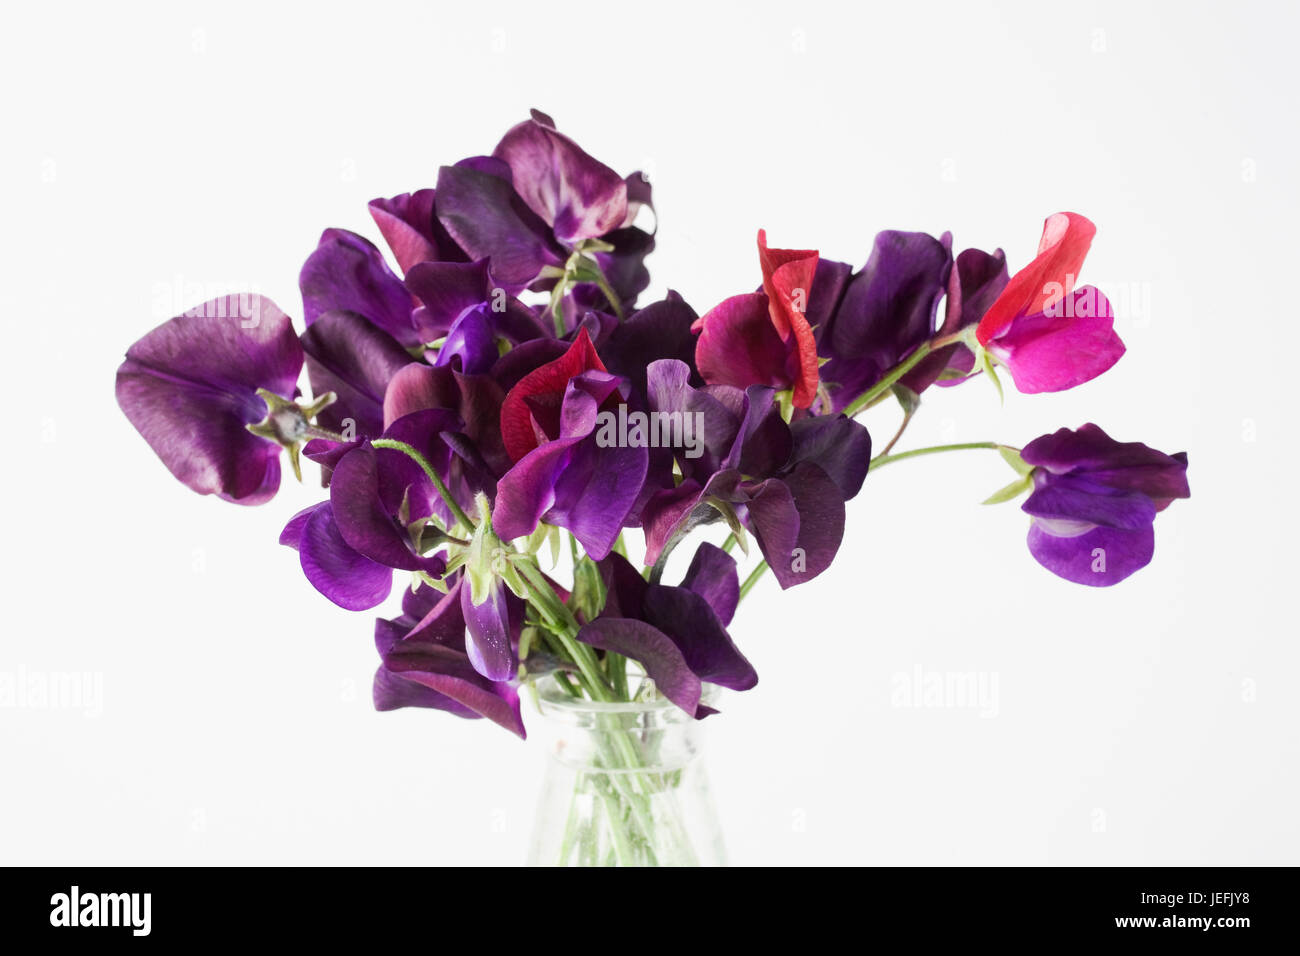 Lathyrus odoratus. Pois de fleurs dans un vase en verre sur un fond blanc. Banque D'Images